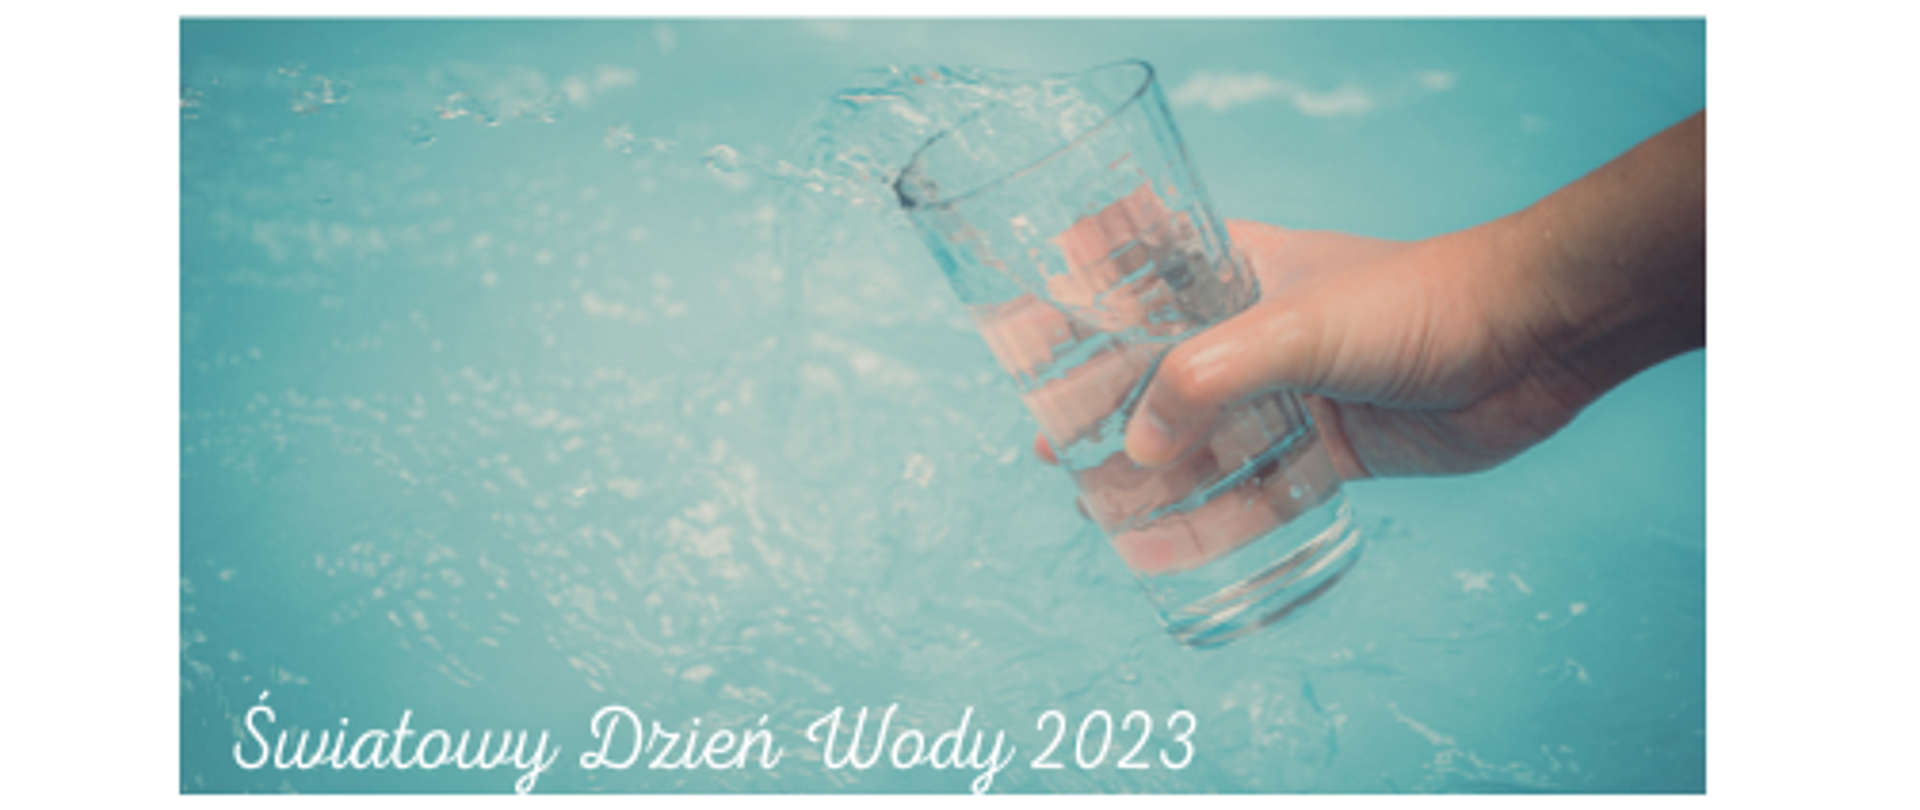 Zdjęcie przedstawia rękę człowieka trzymającą szklankę nad taflą błękitnej wody. Na dole fotografii umieszczony jest biały napis Światowy Dzień Wody 2023.